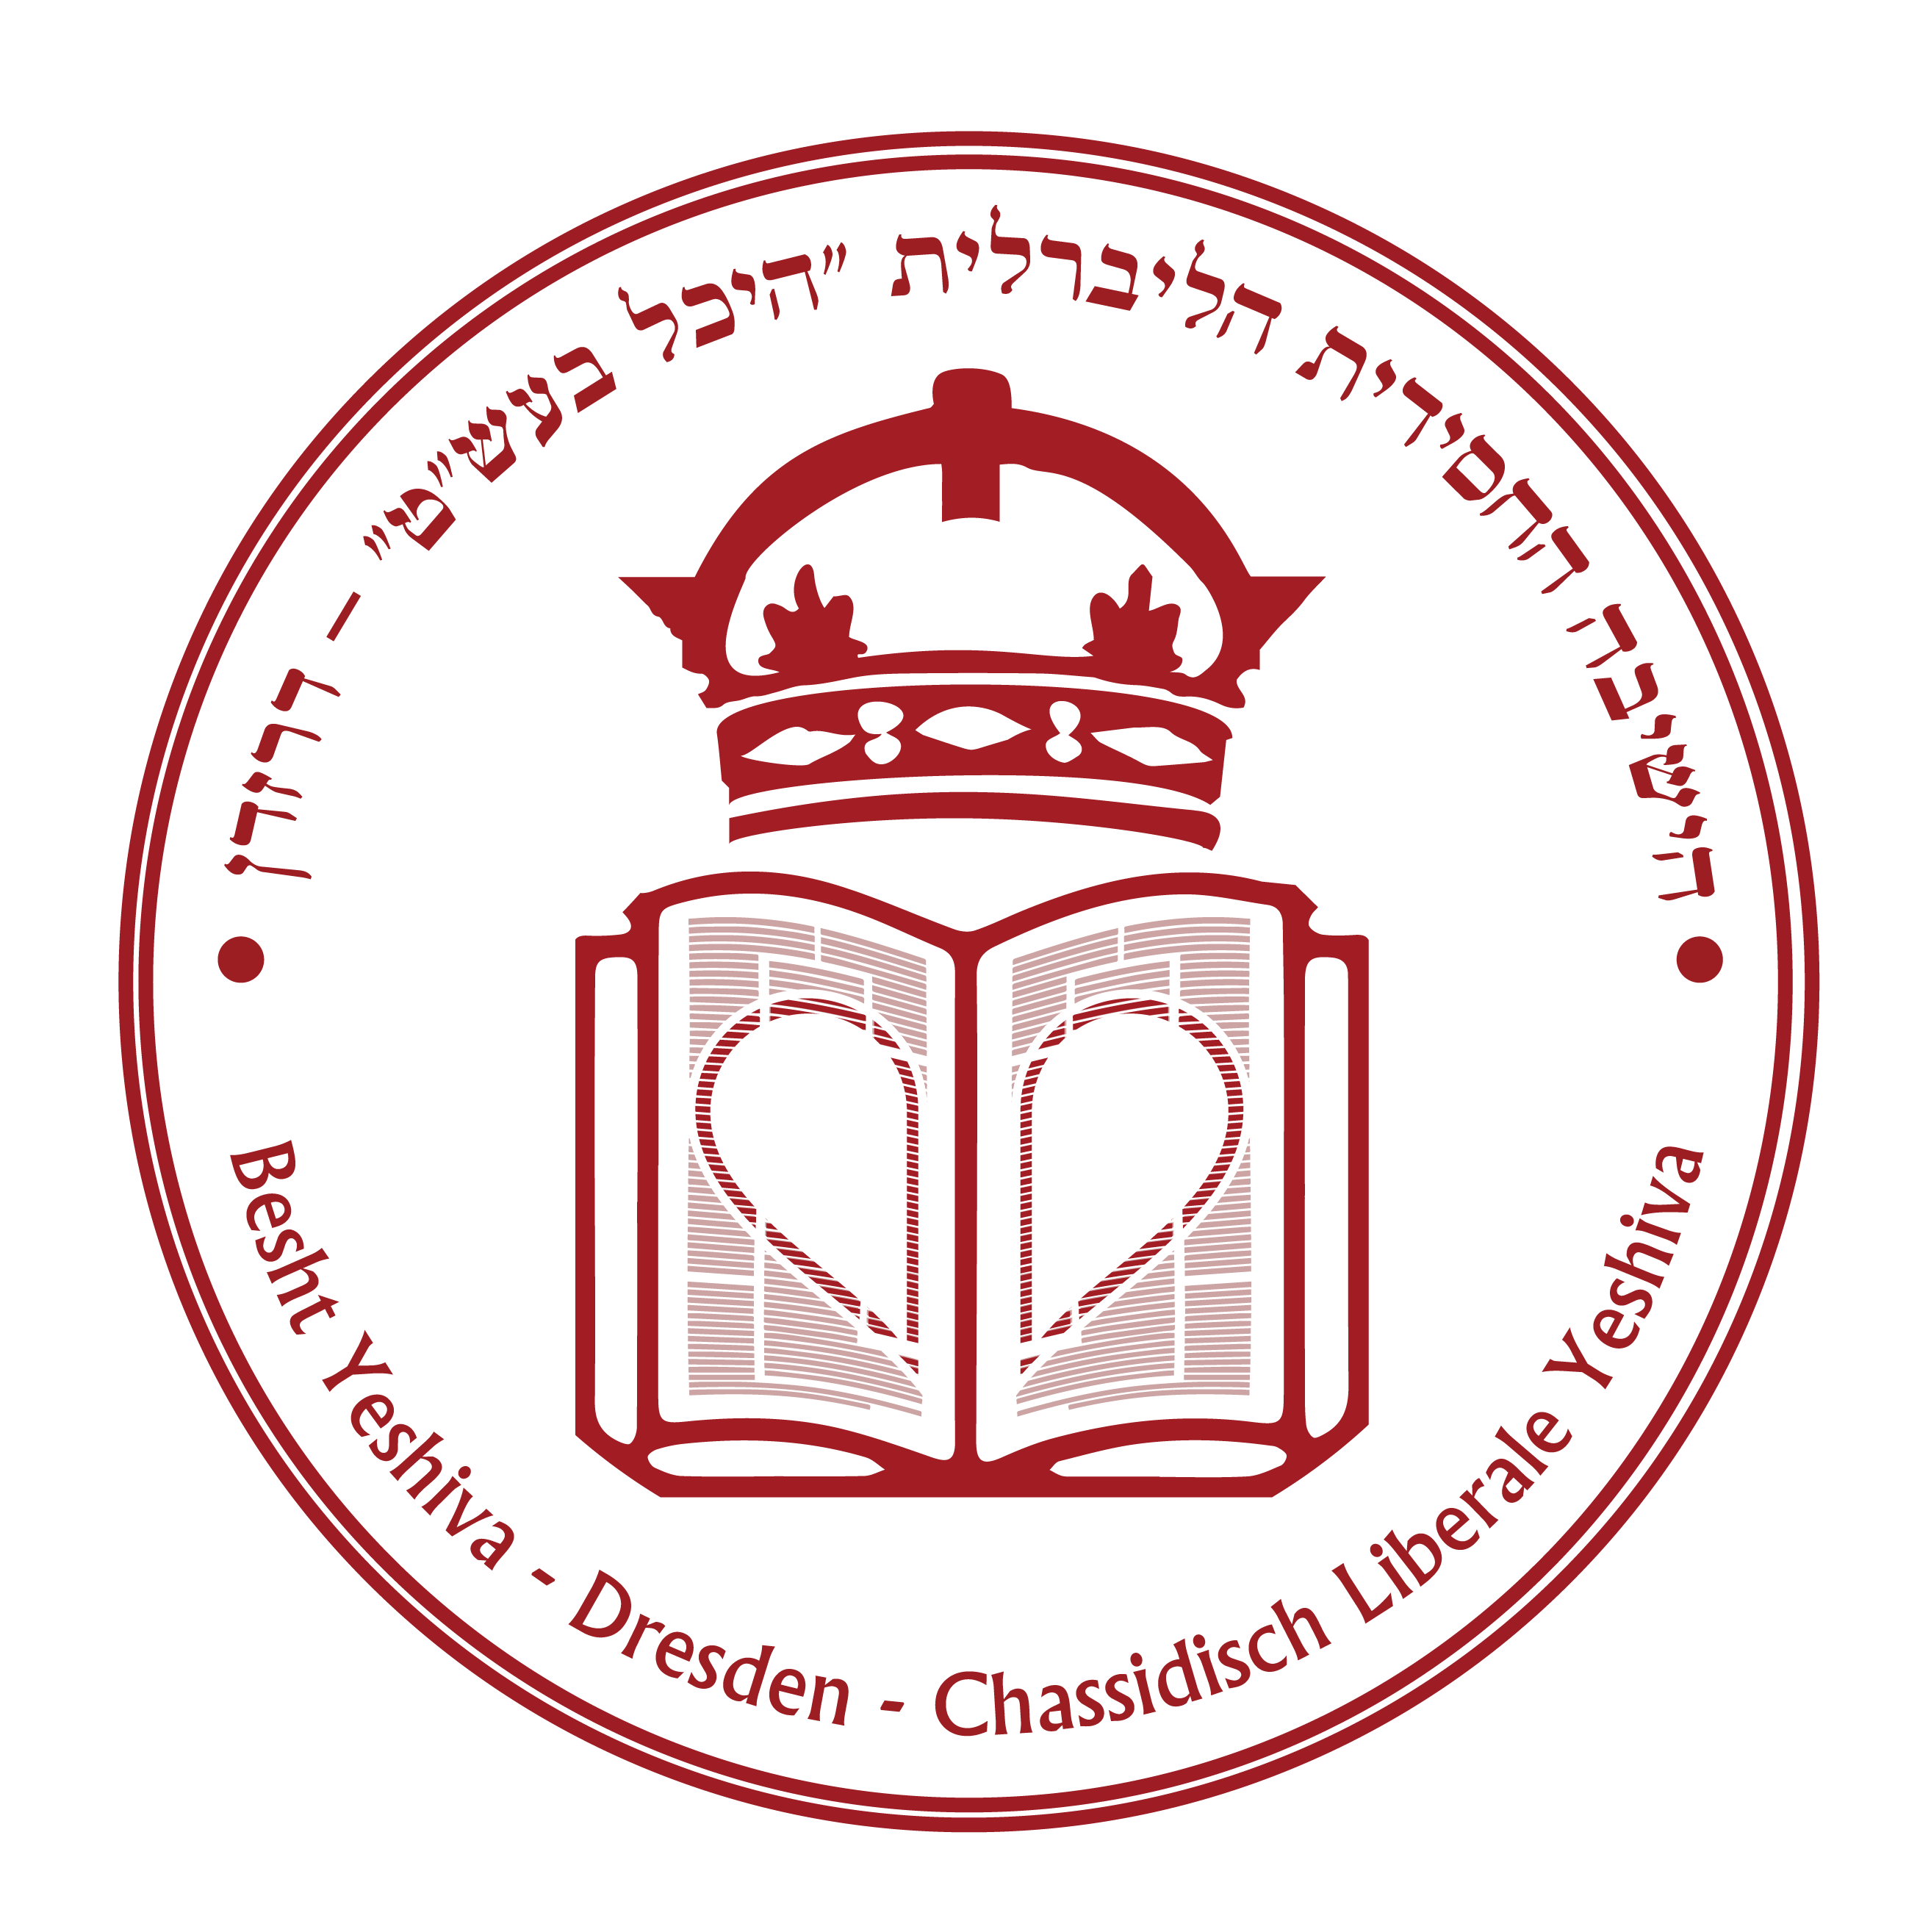 Besht Yeshiva Dresden logo